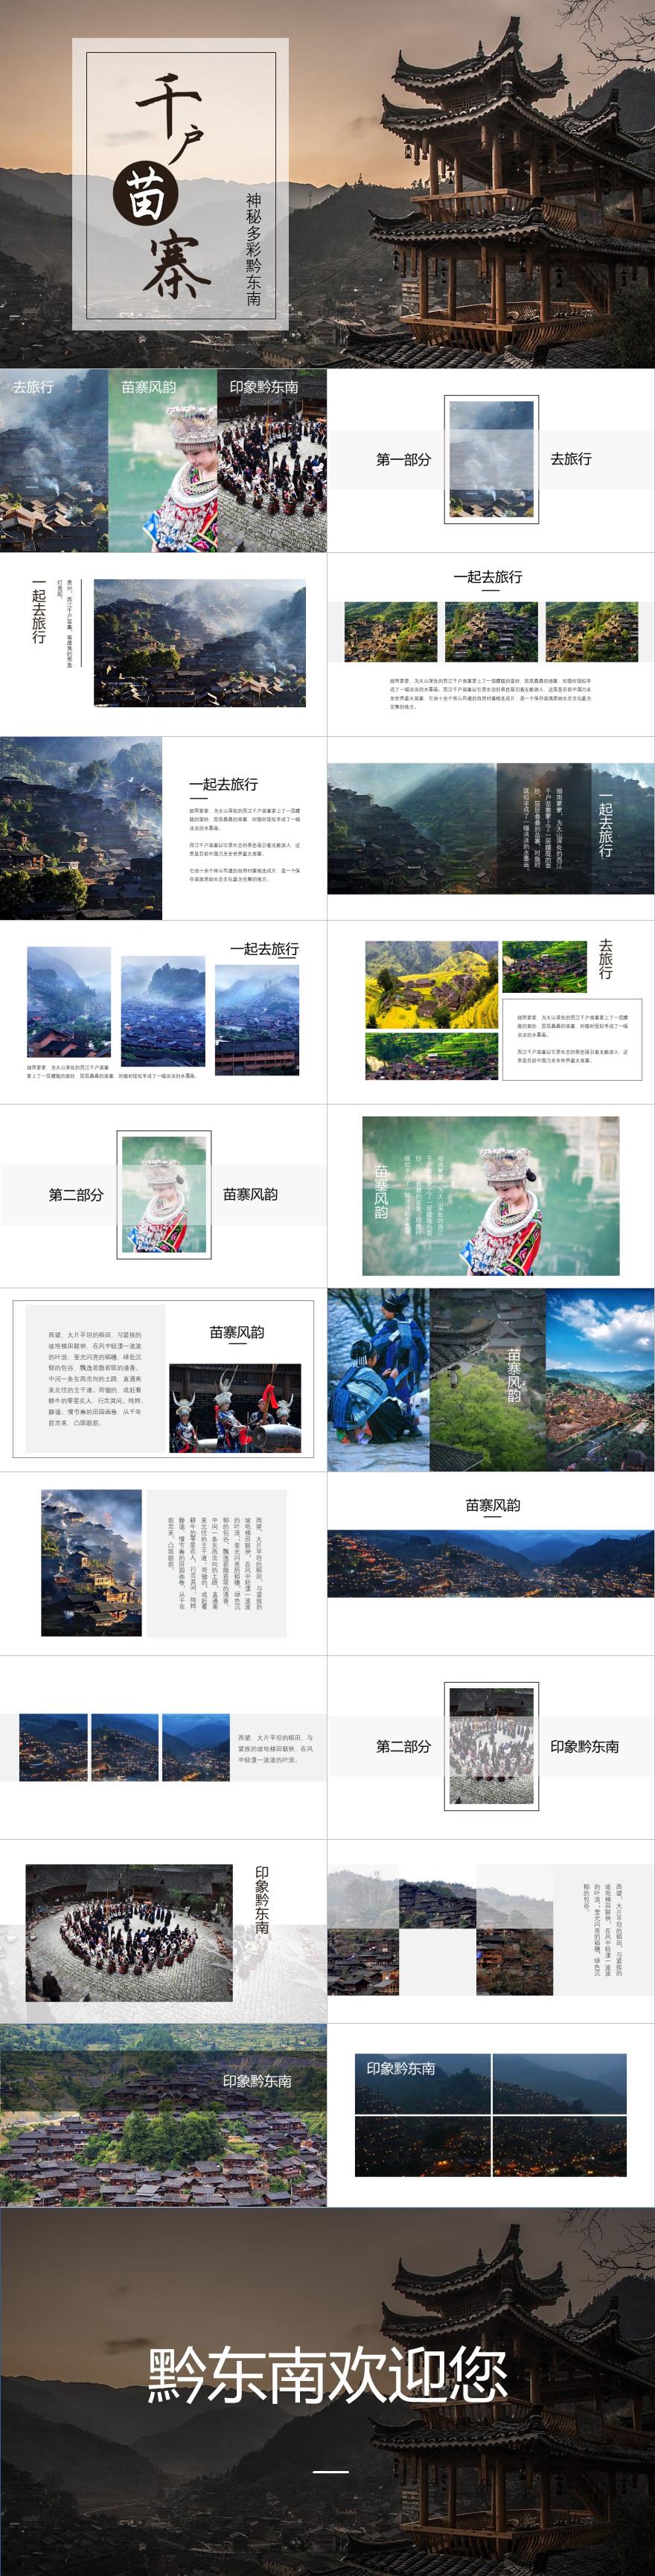 贵州旅游相册PPT模板